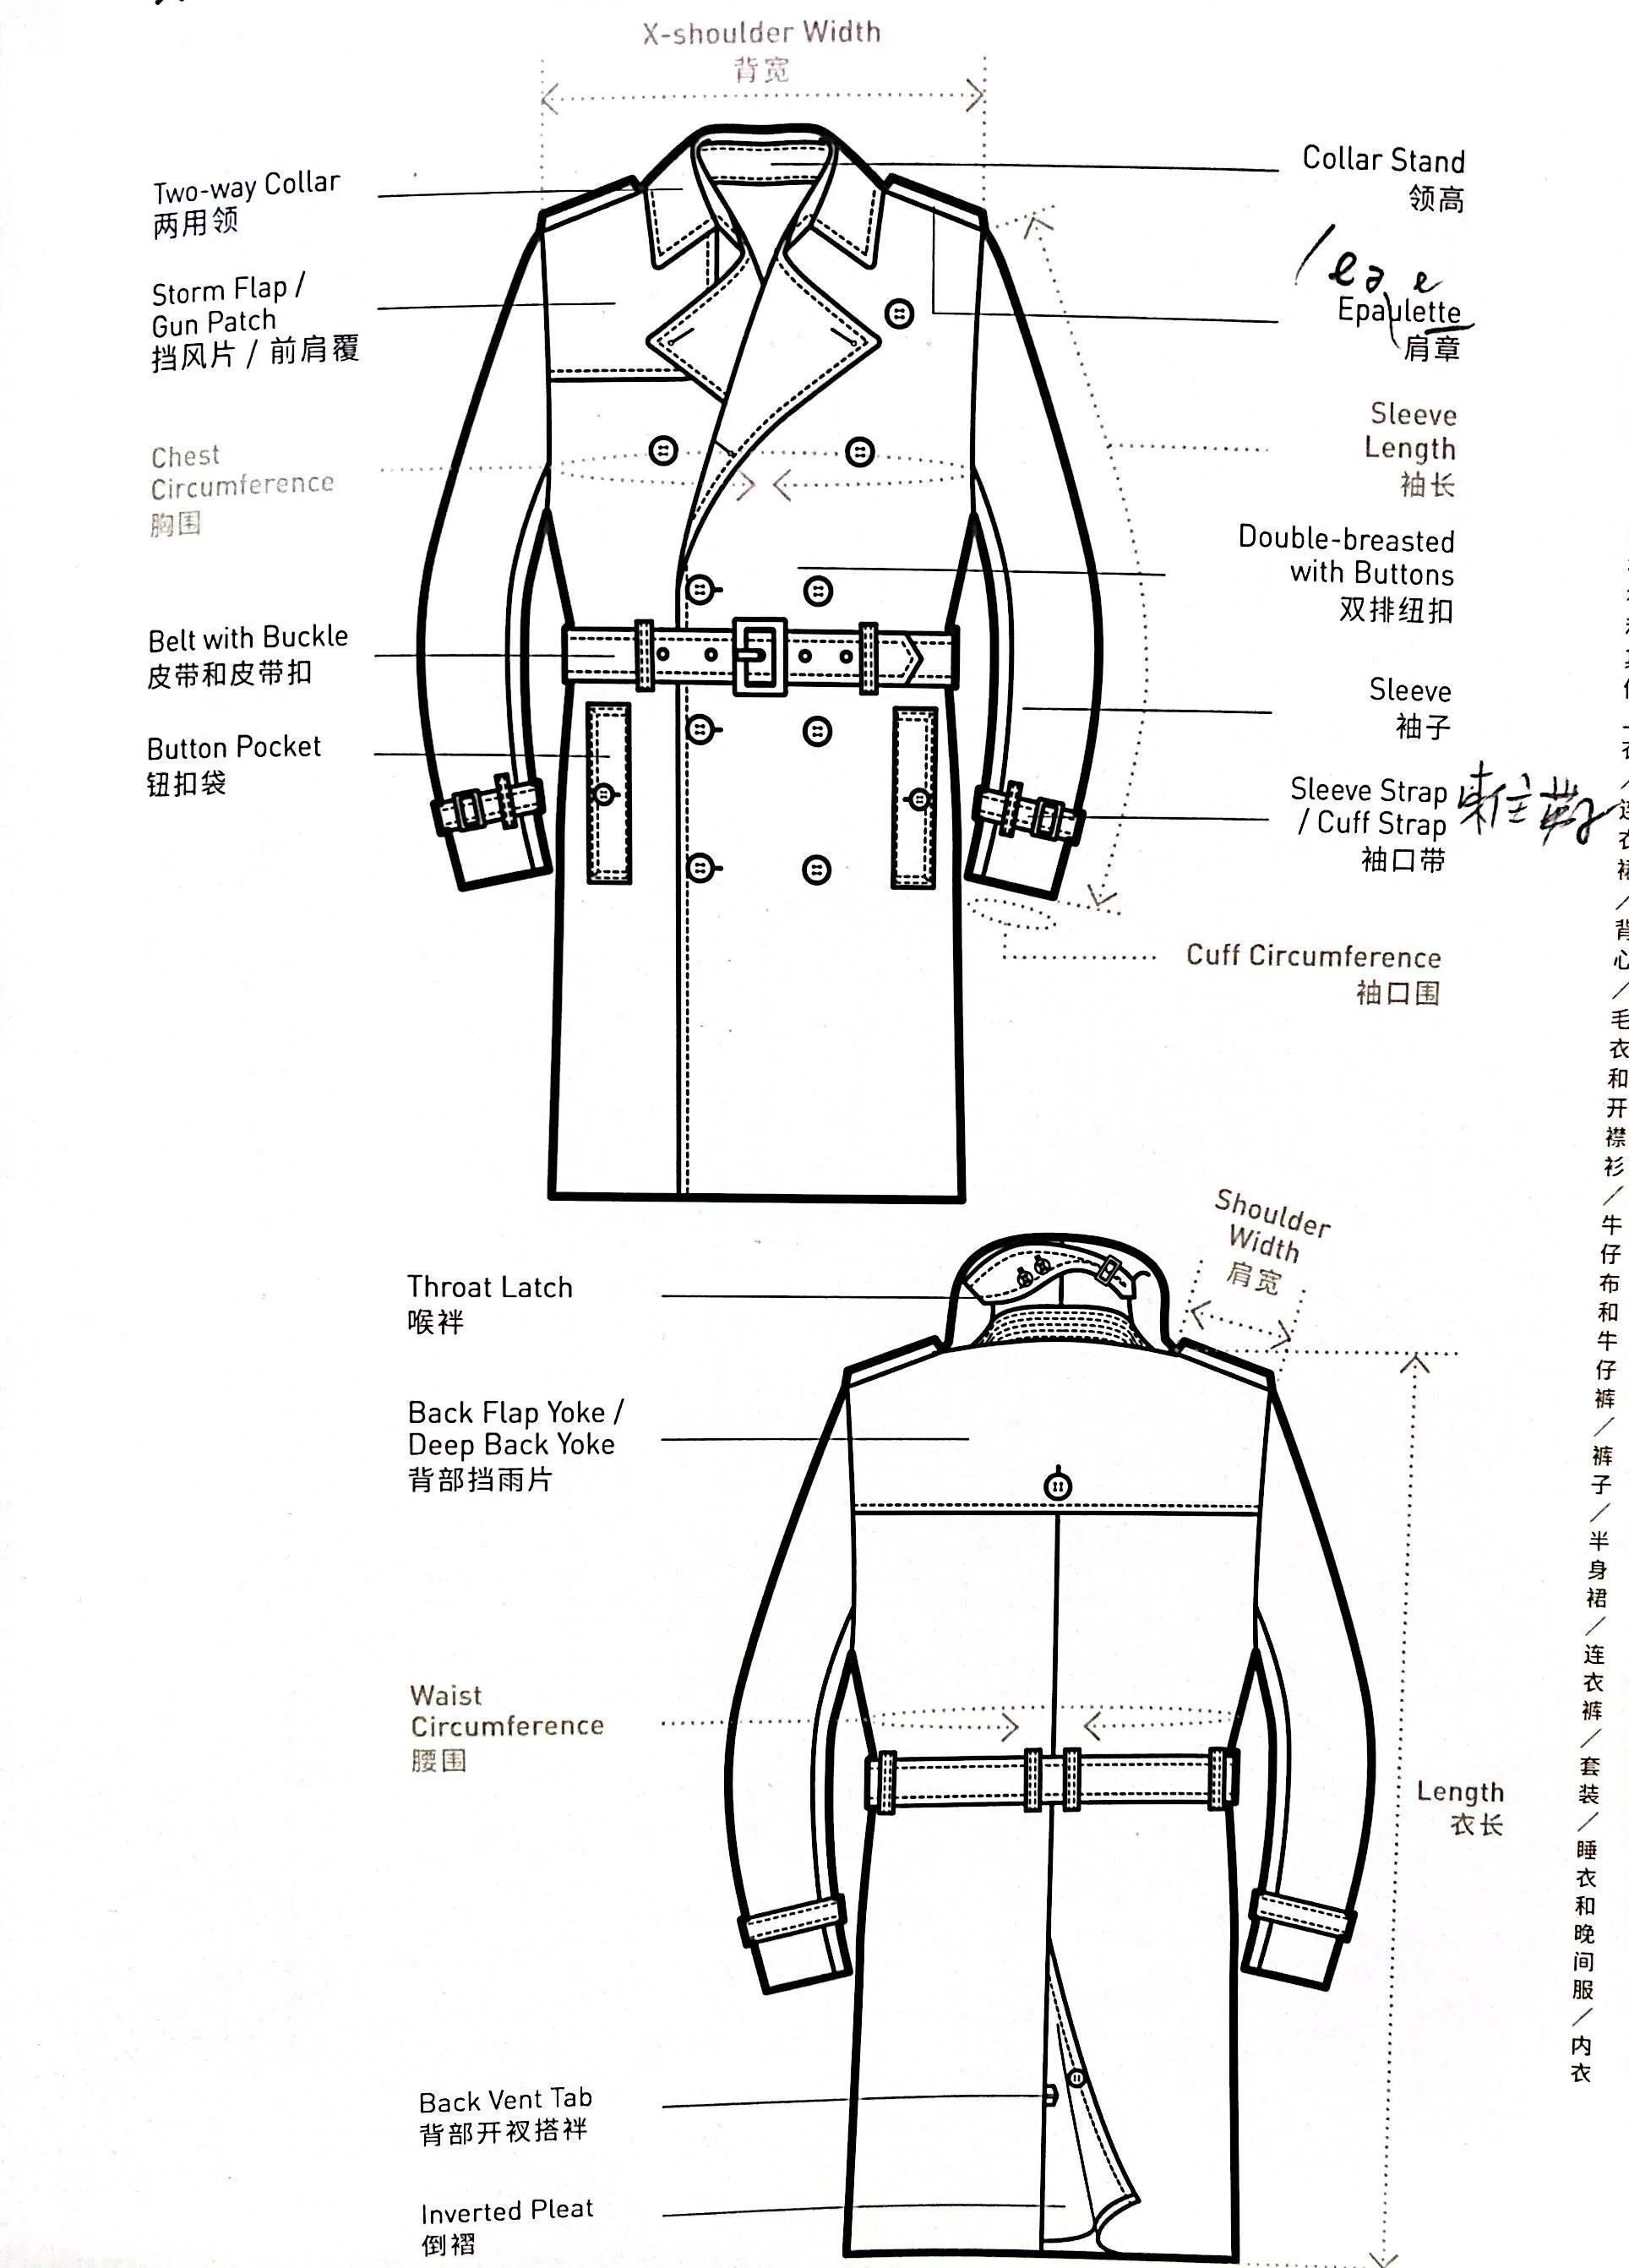 给服装外贸小萌新的职场宝典-大衣和外套细节名称中英文对照